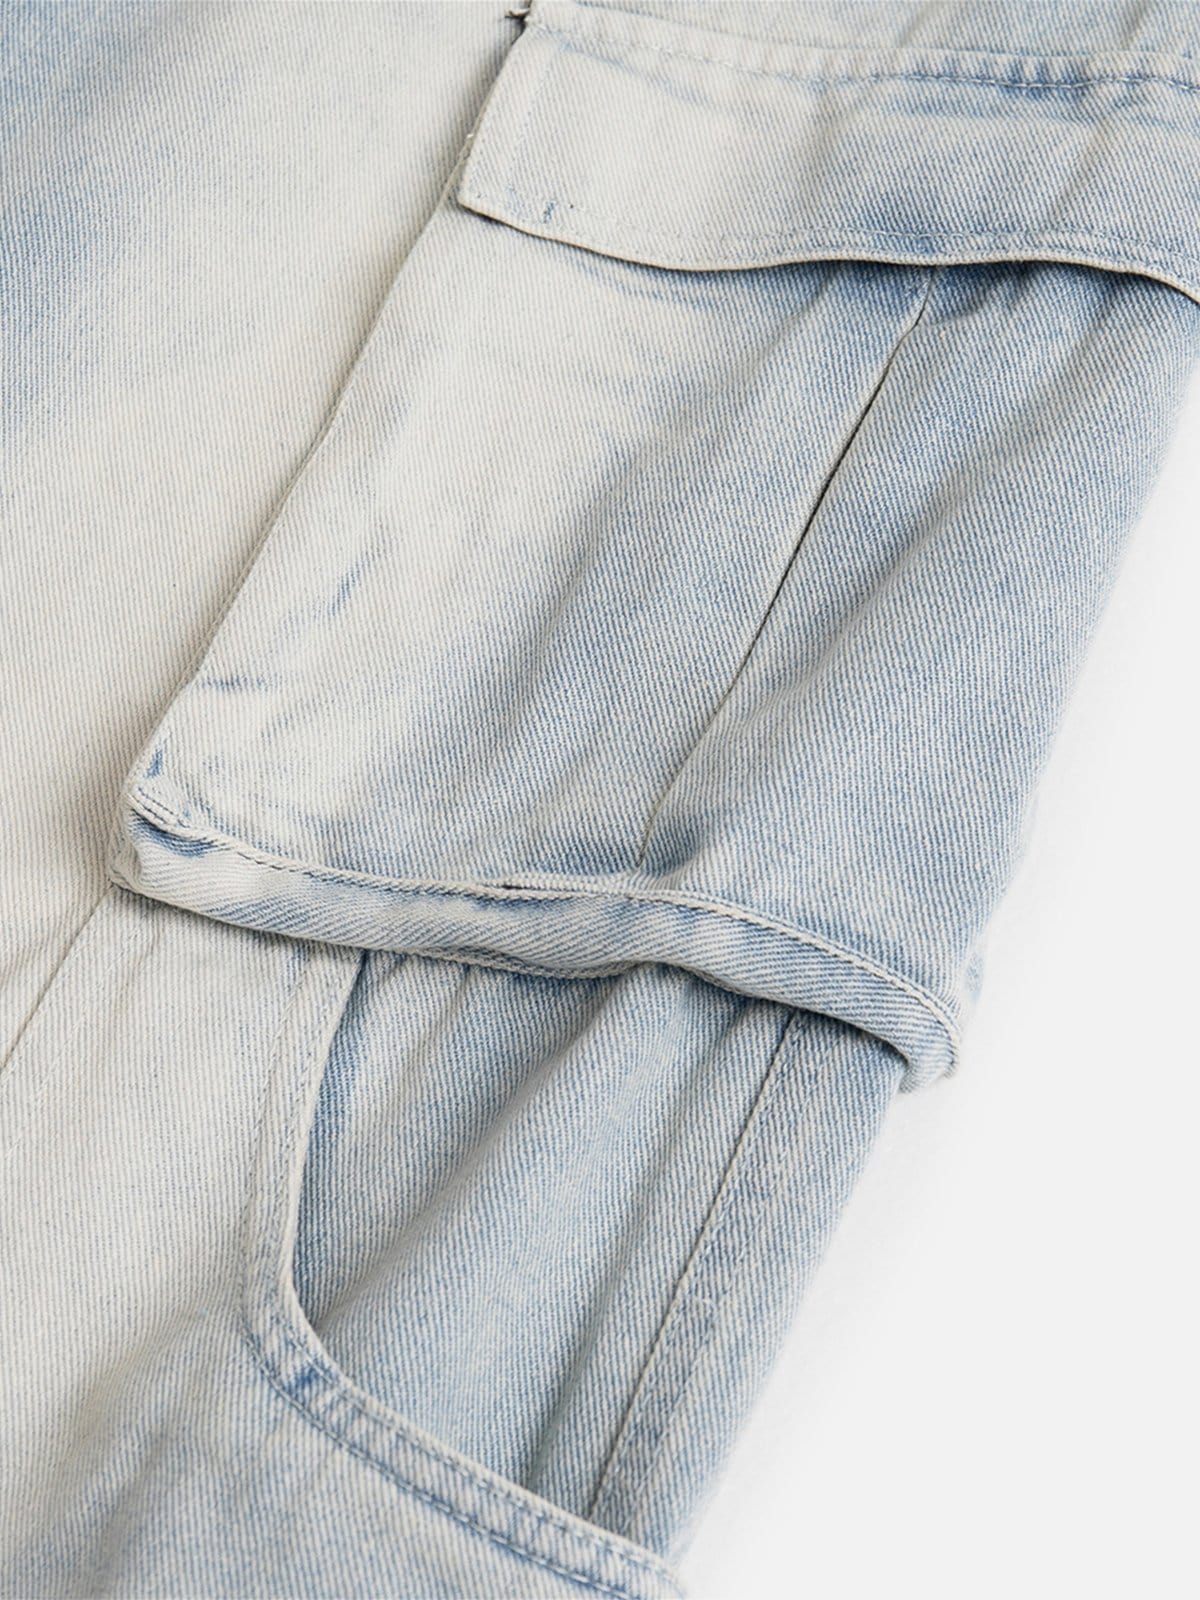 NEV Multi Pocket Washed Jeans